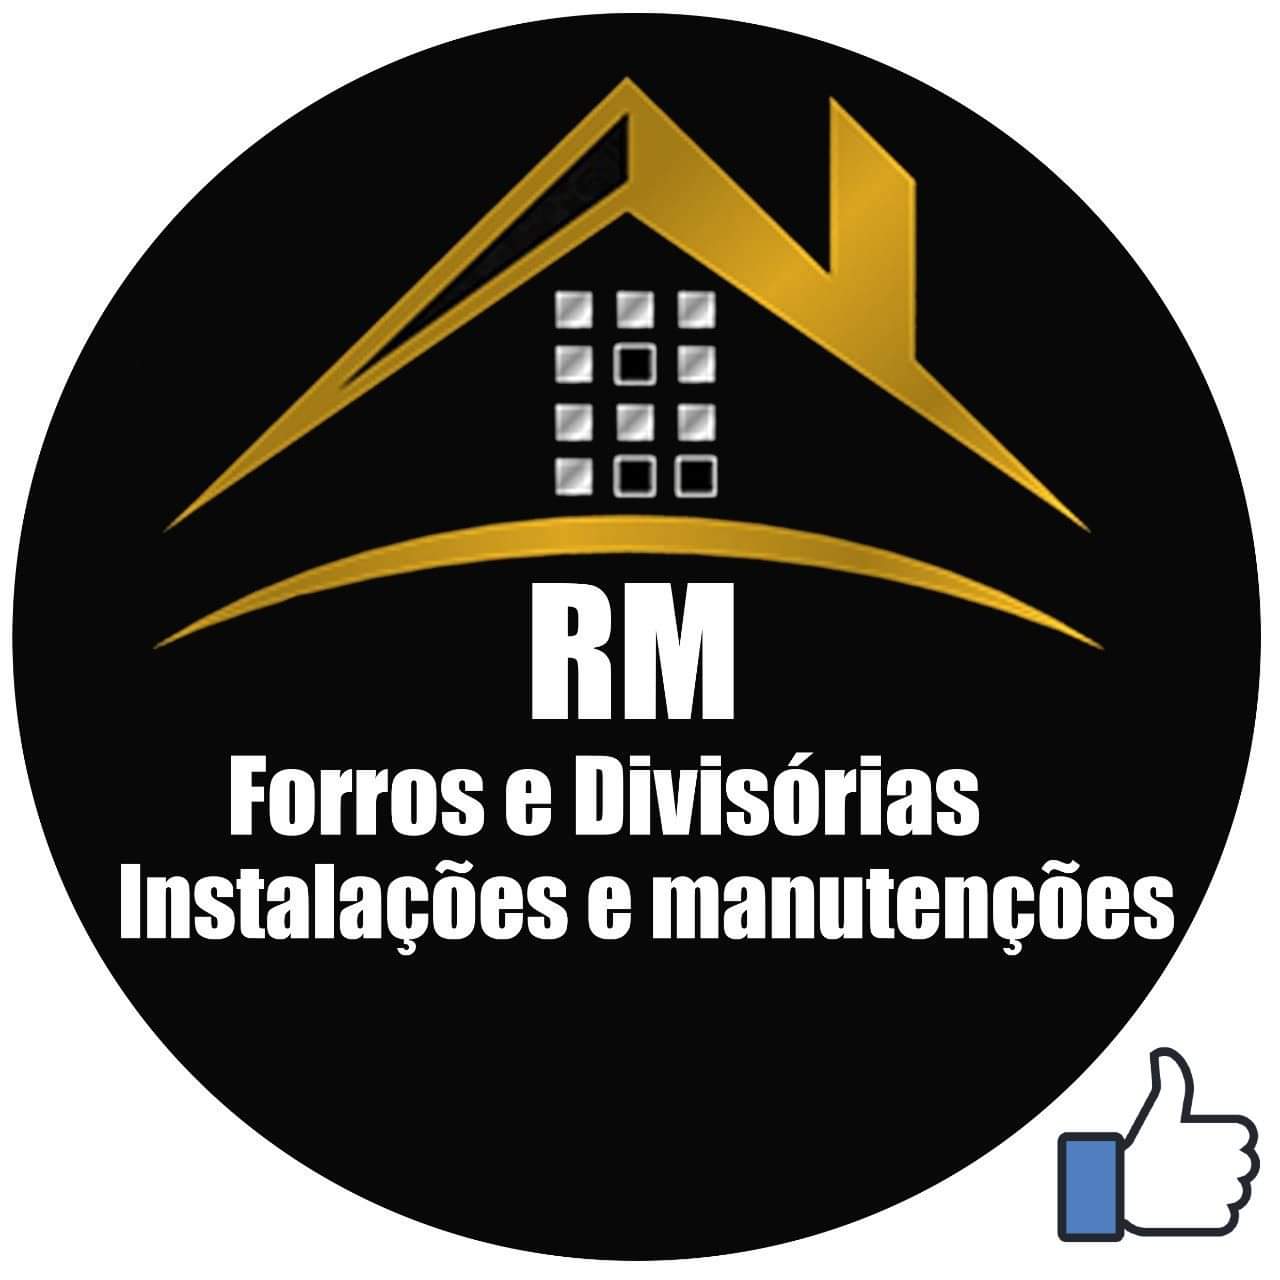 RM Forros e Divisórias Instalações e Manutenções